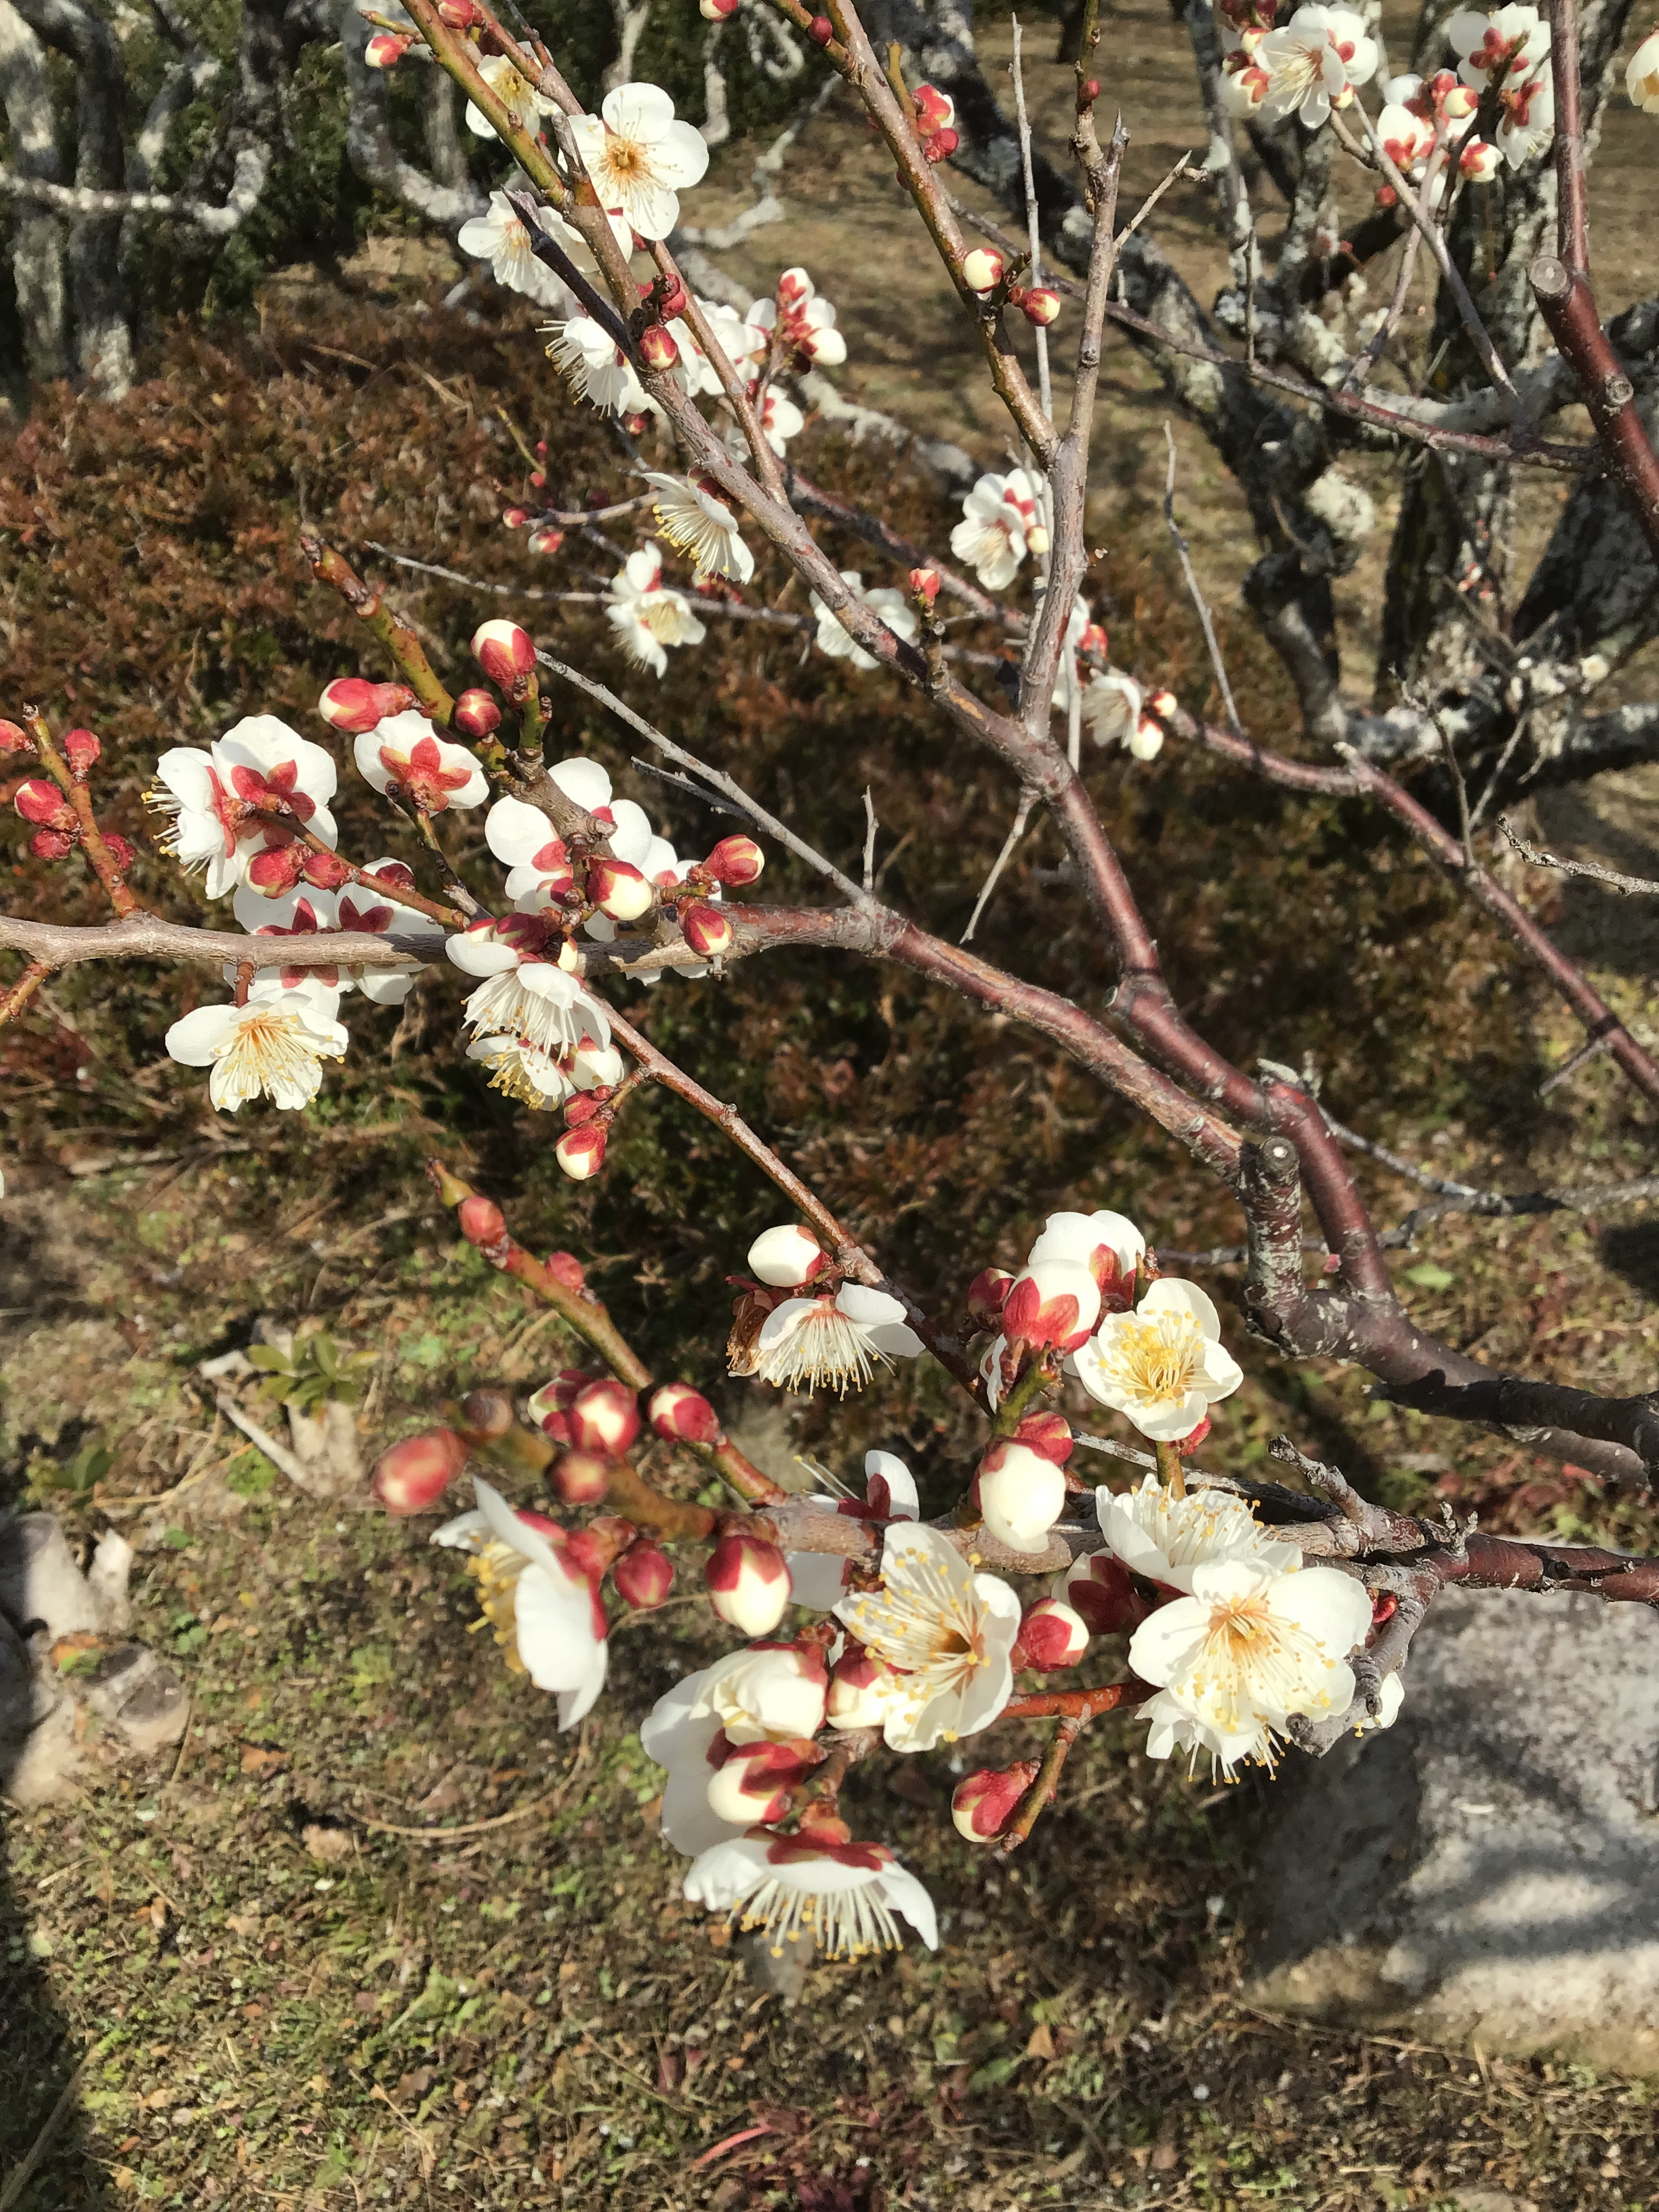 A close up of a plum blossom tree